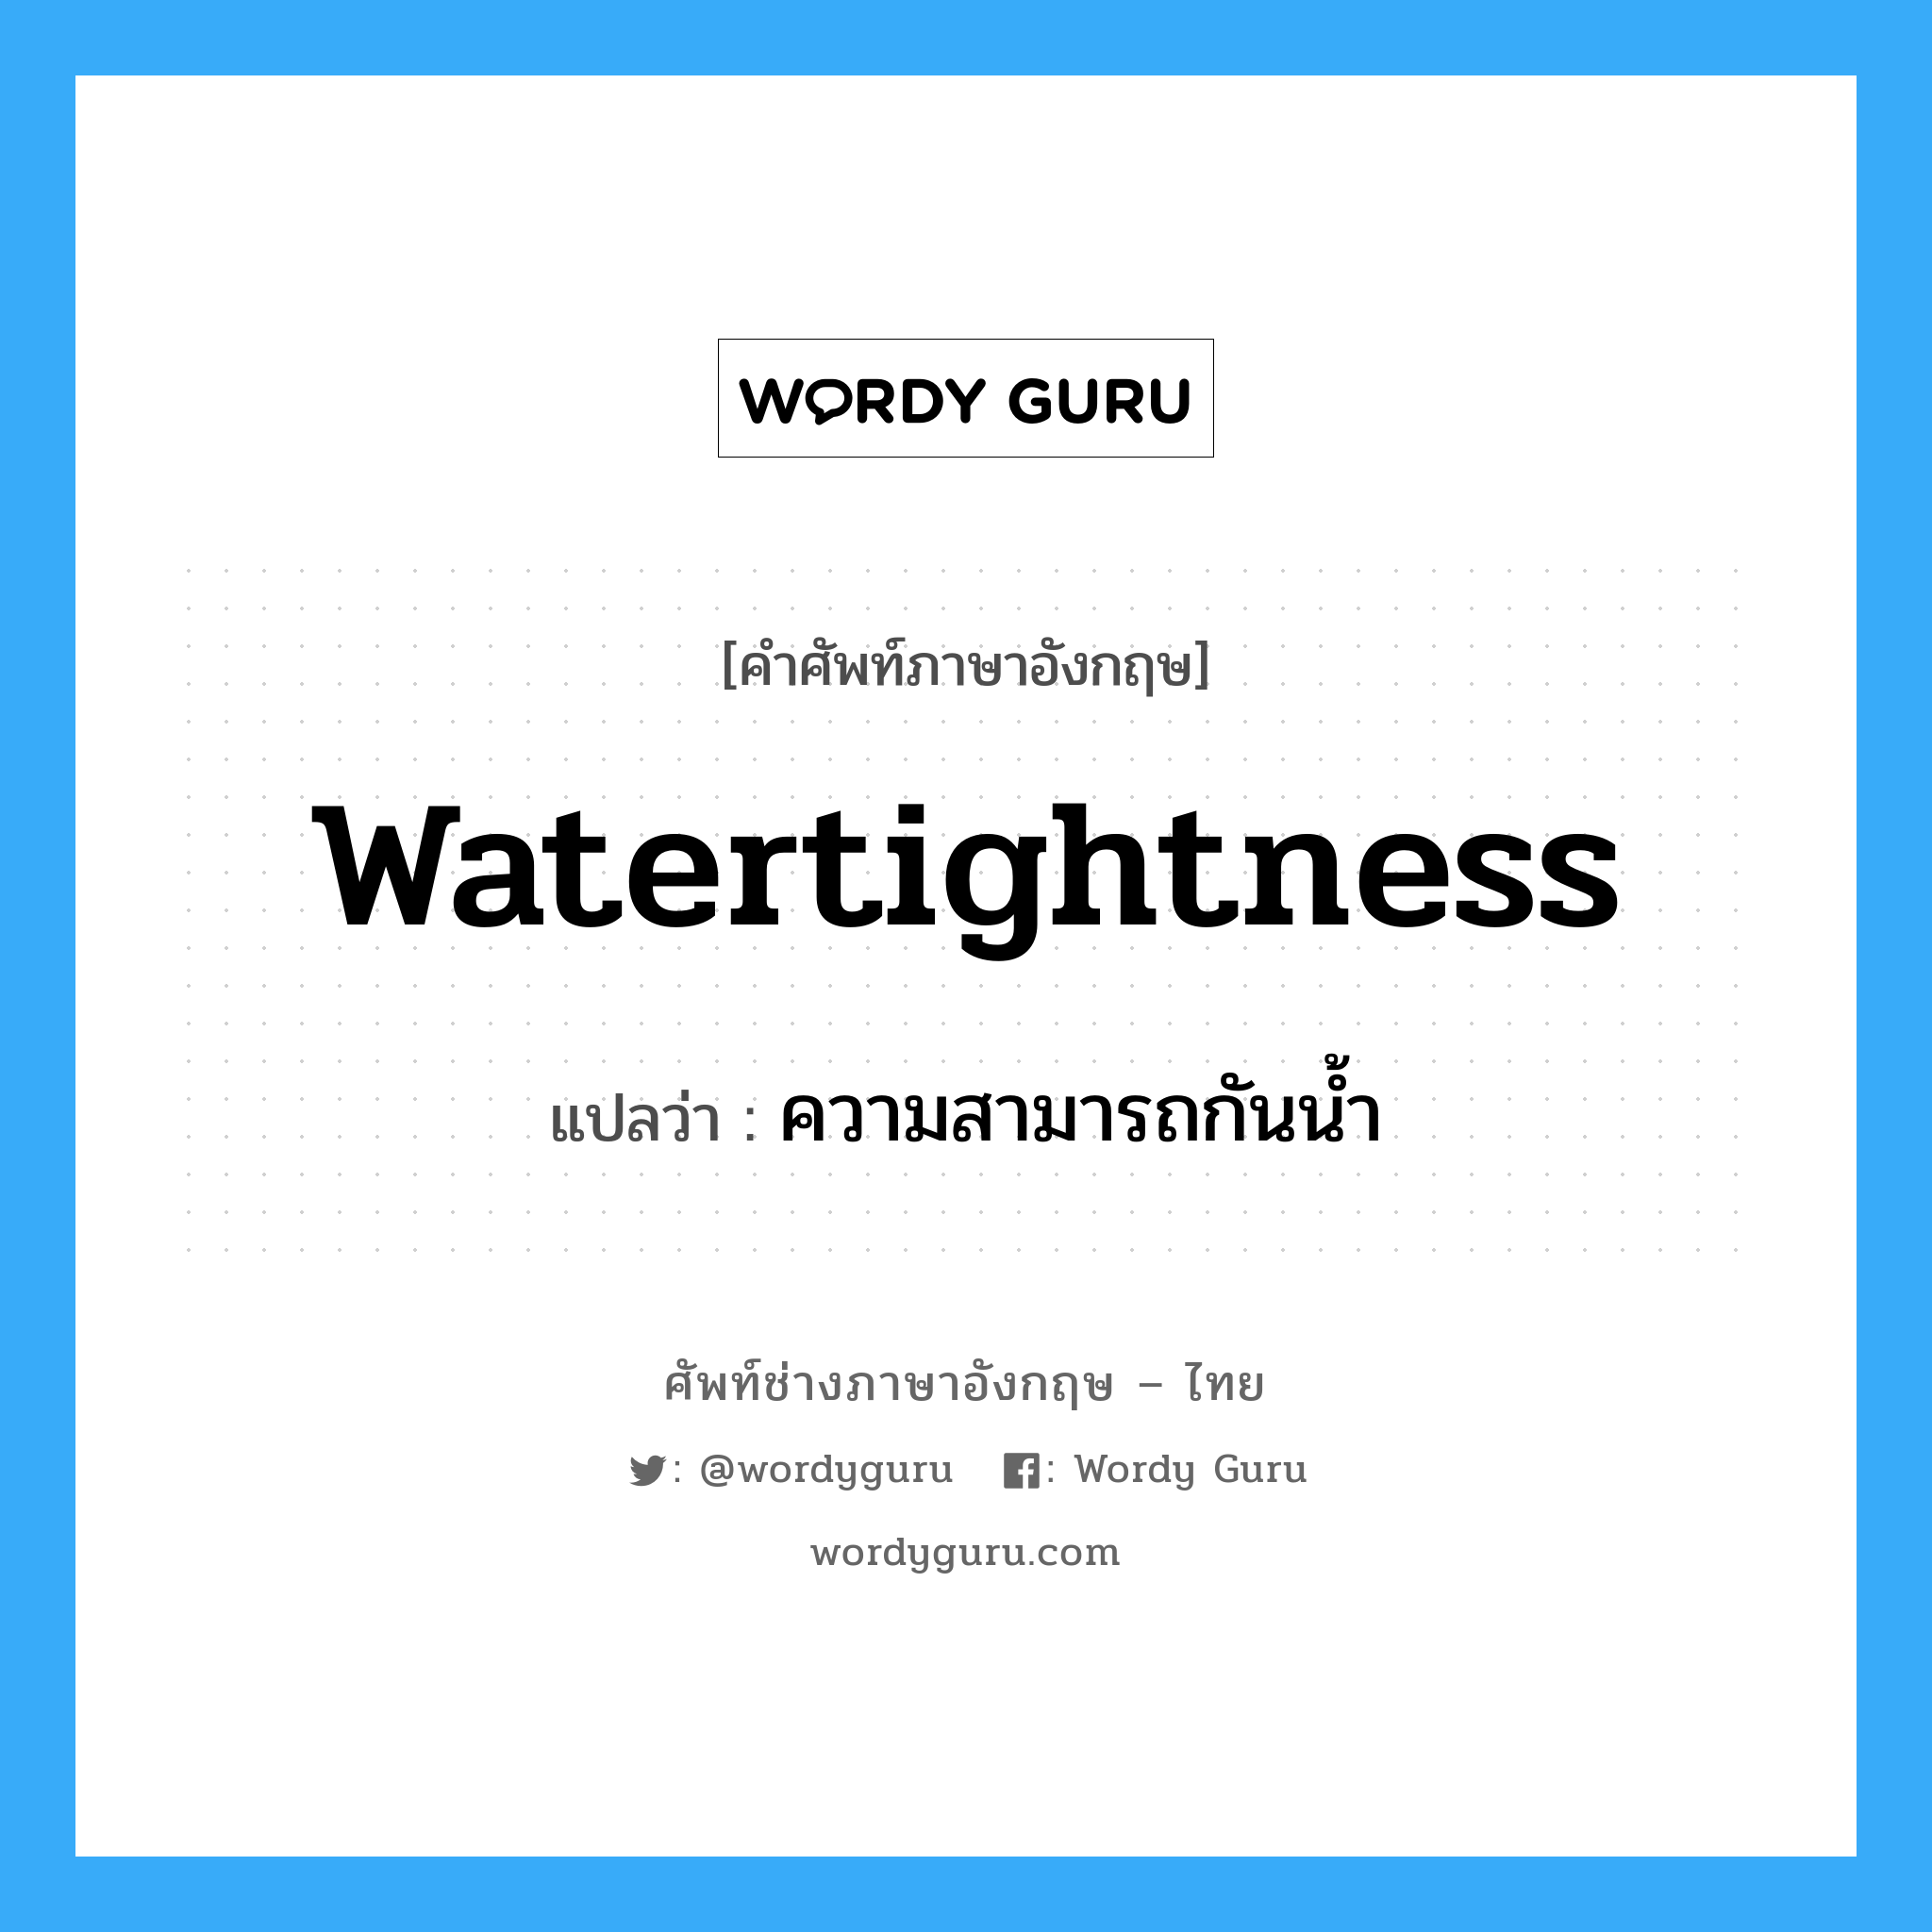 watertightness แปลว่า?, คำศัพท์ช่างภาษาอังกฤษ - ไทย watertightness คำศัพท์ภาษาอังกฤษ watertightness แปลว่า ความสามารถกันน้ำ